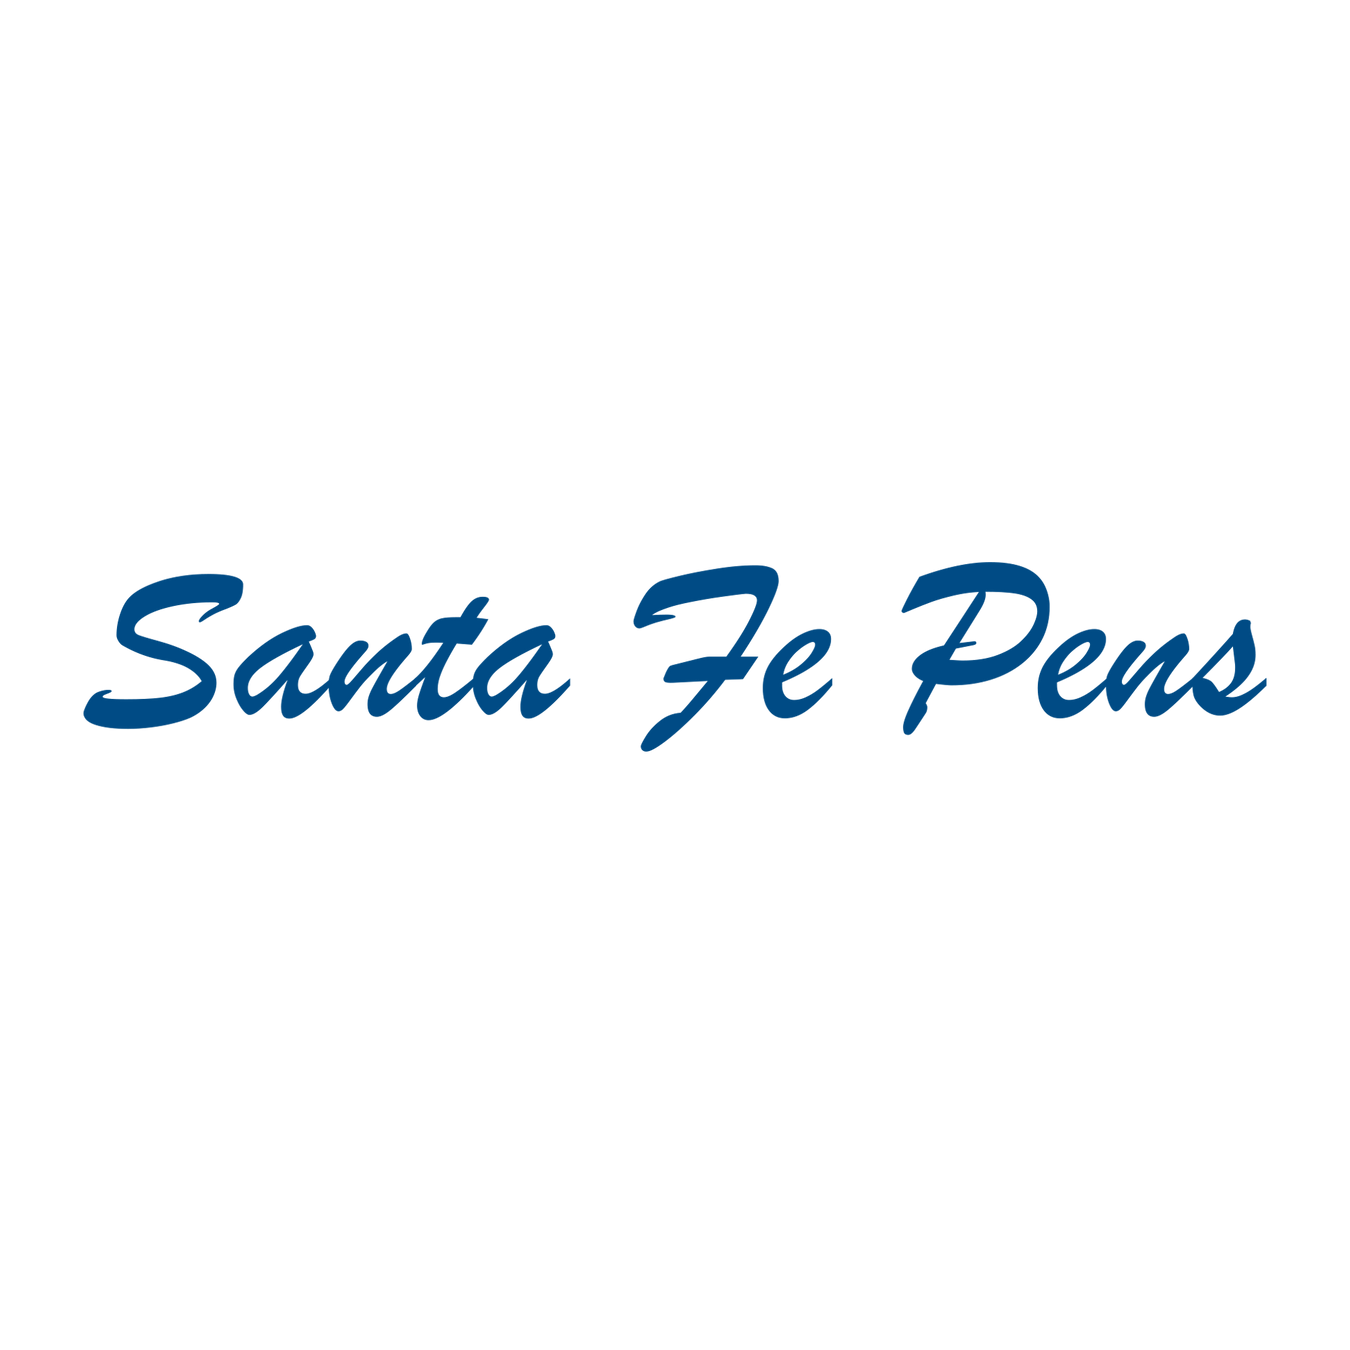 Santa Fe Pens